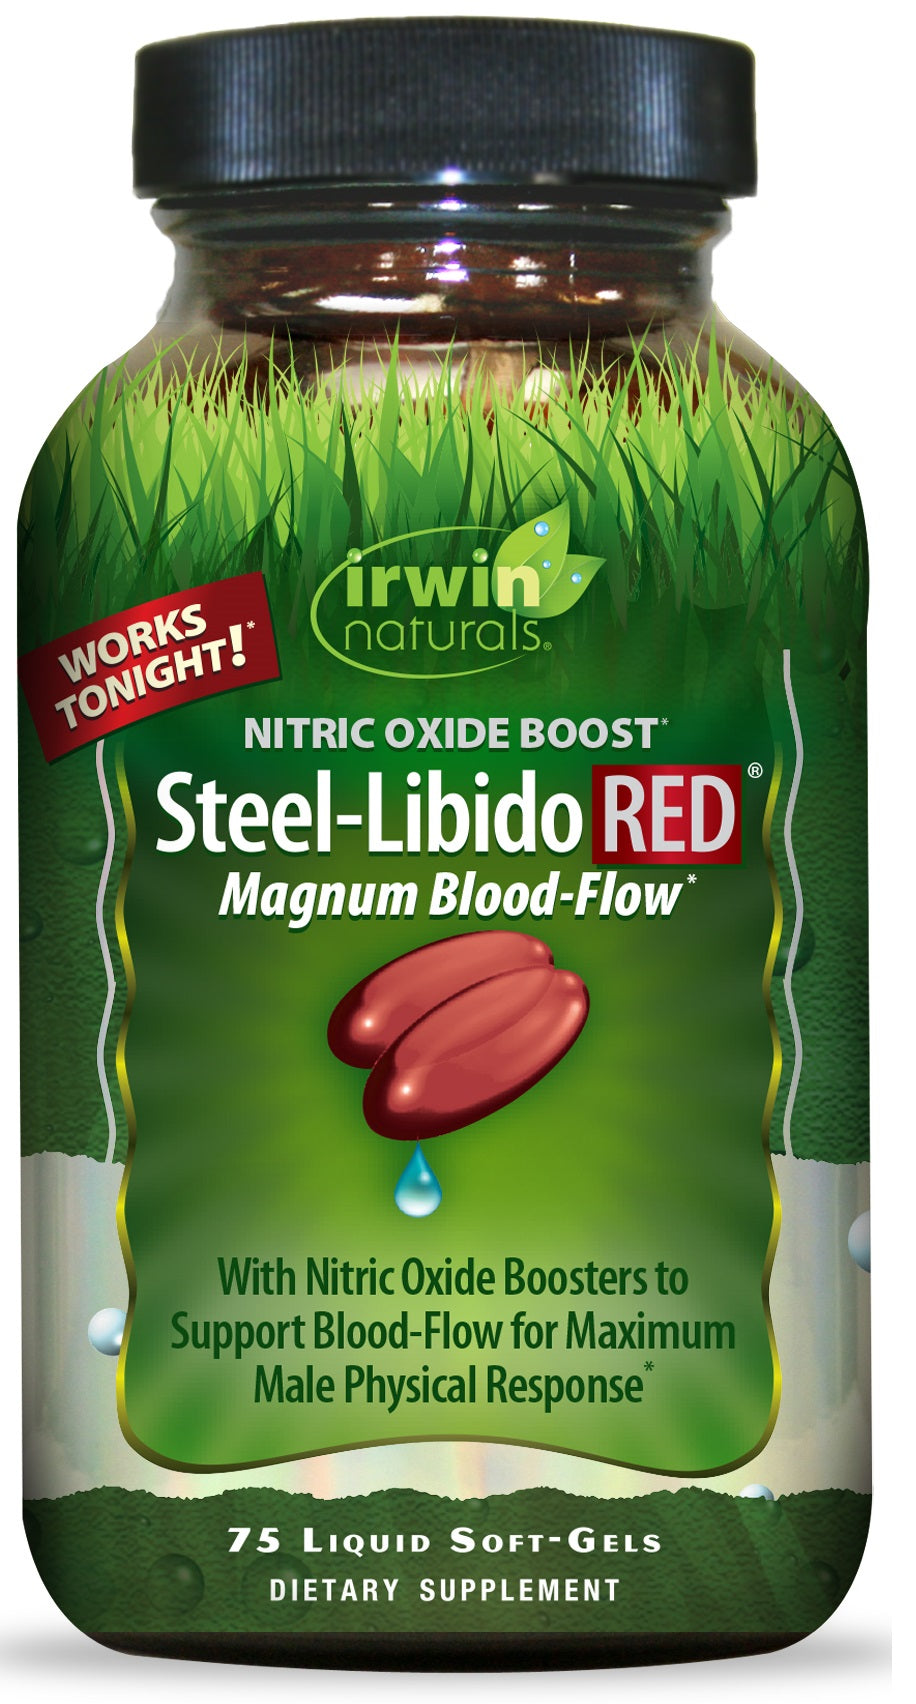 Image of Irwin Naturals Steel-Libido RED